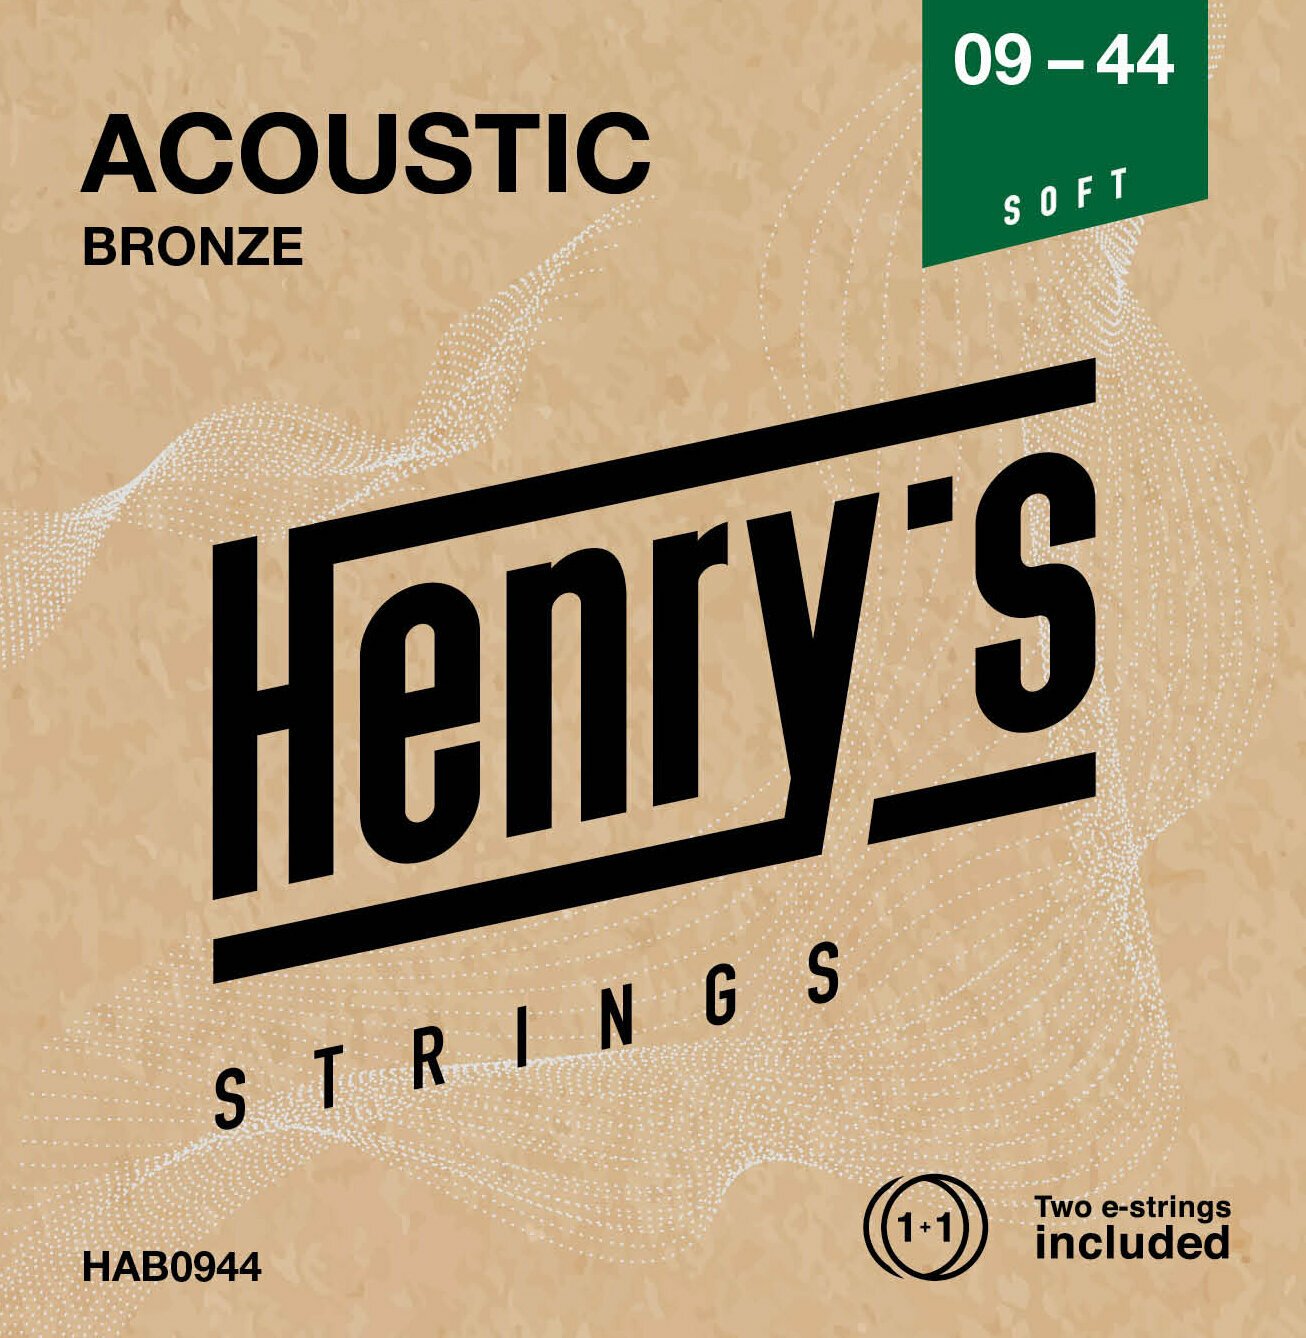 Guitar strings Henry's Bronze 09-44